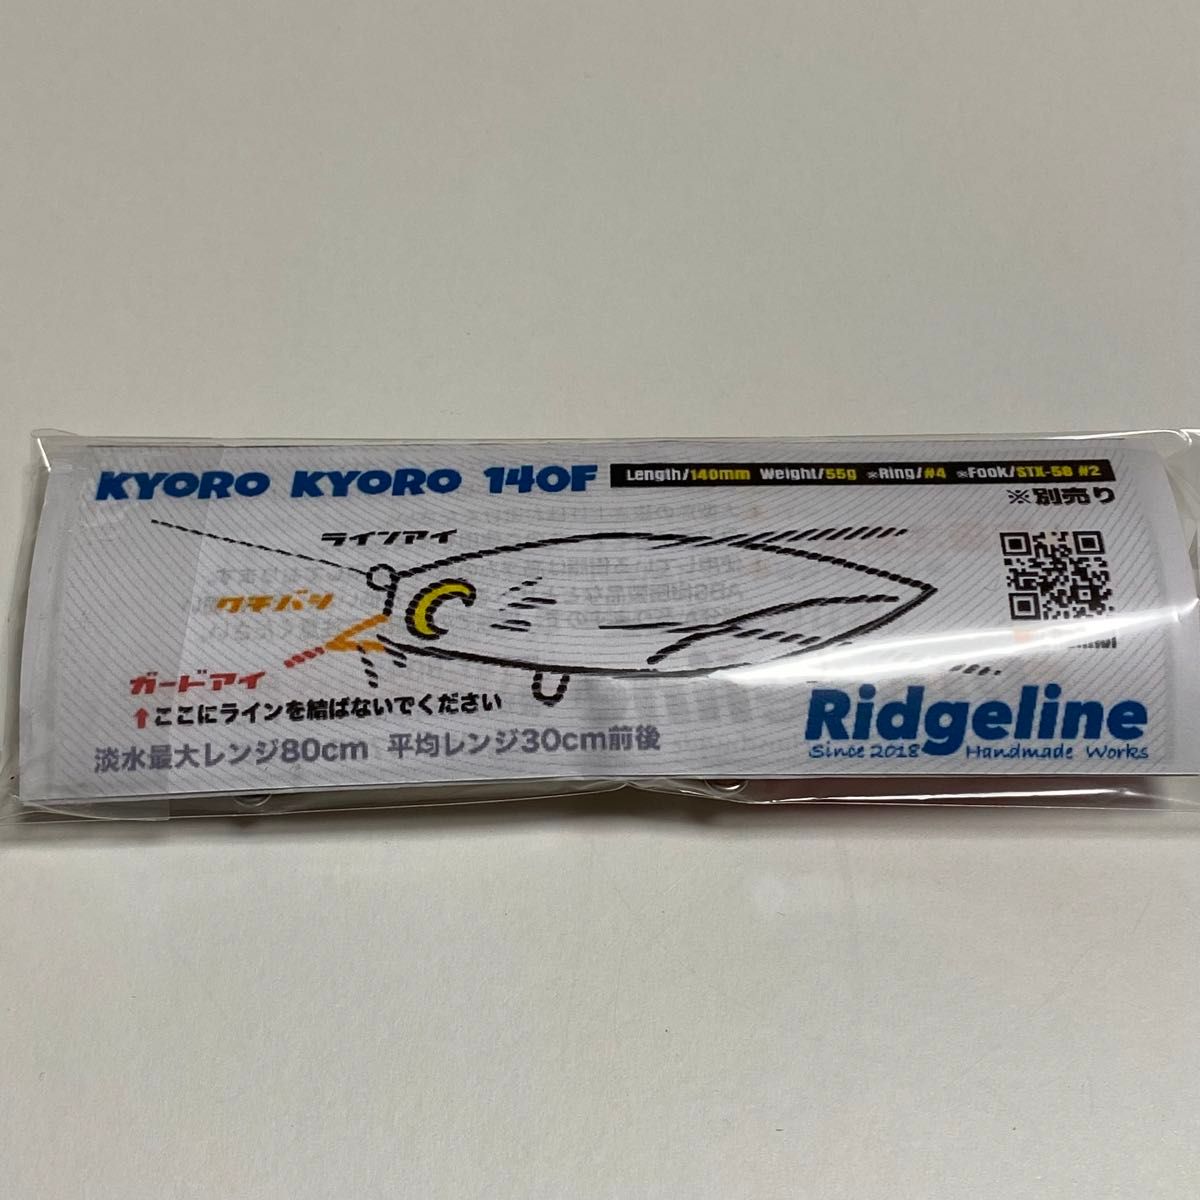 Ridgeline リッジライン キョロキョロ140F